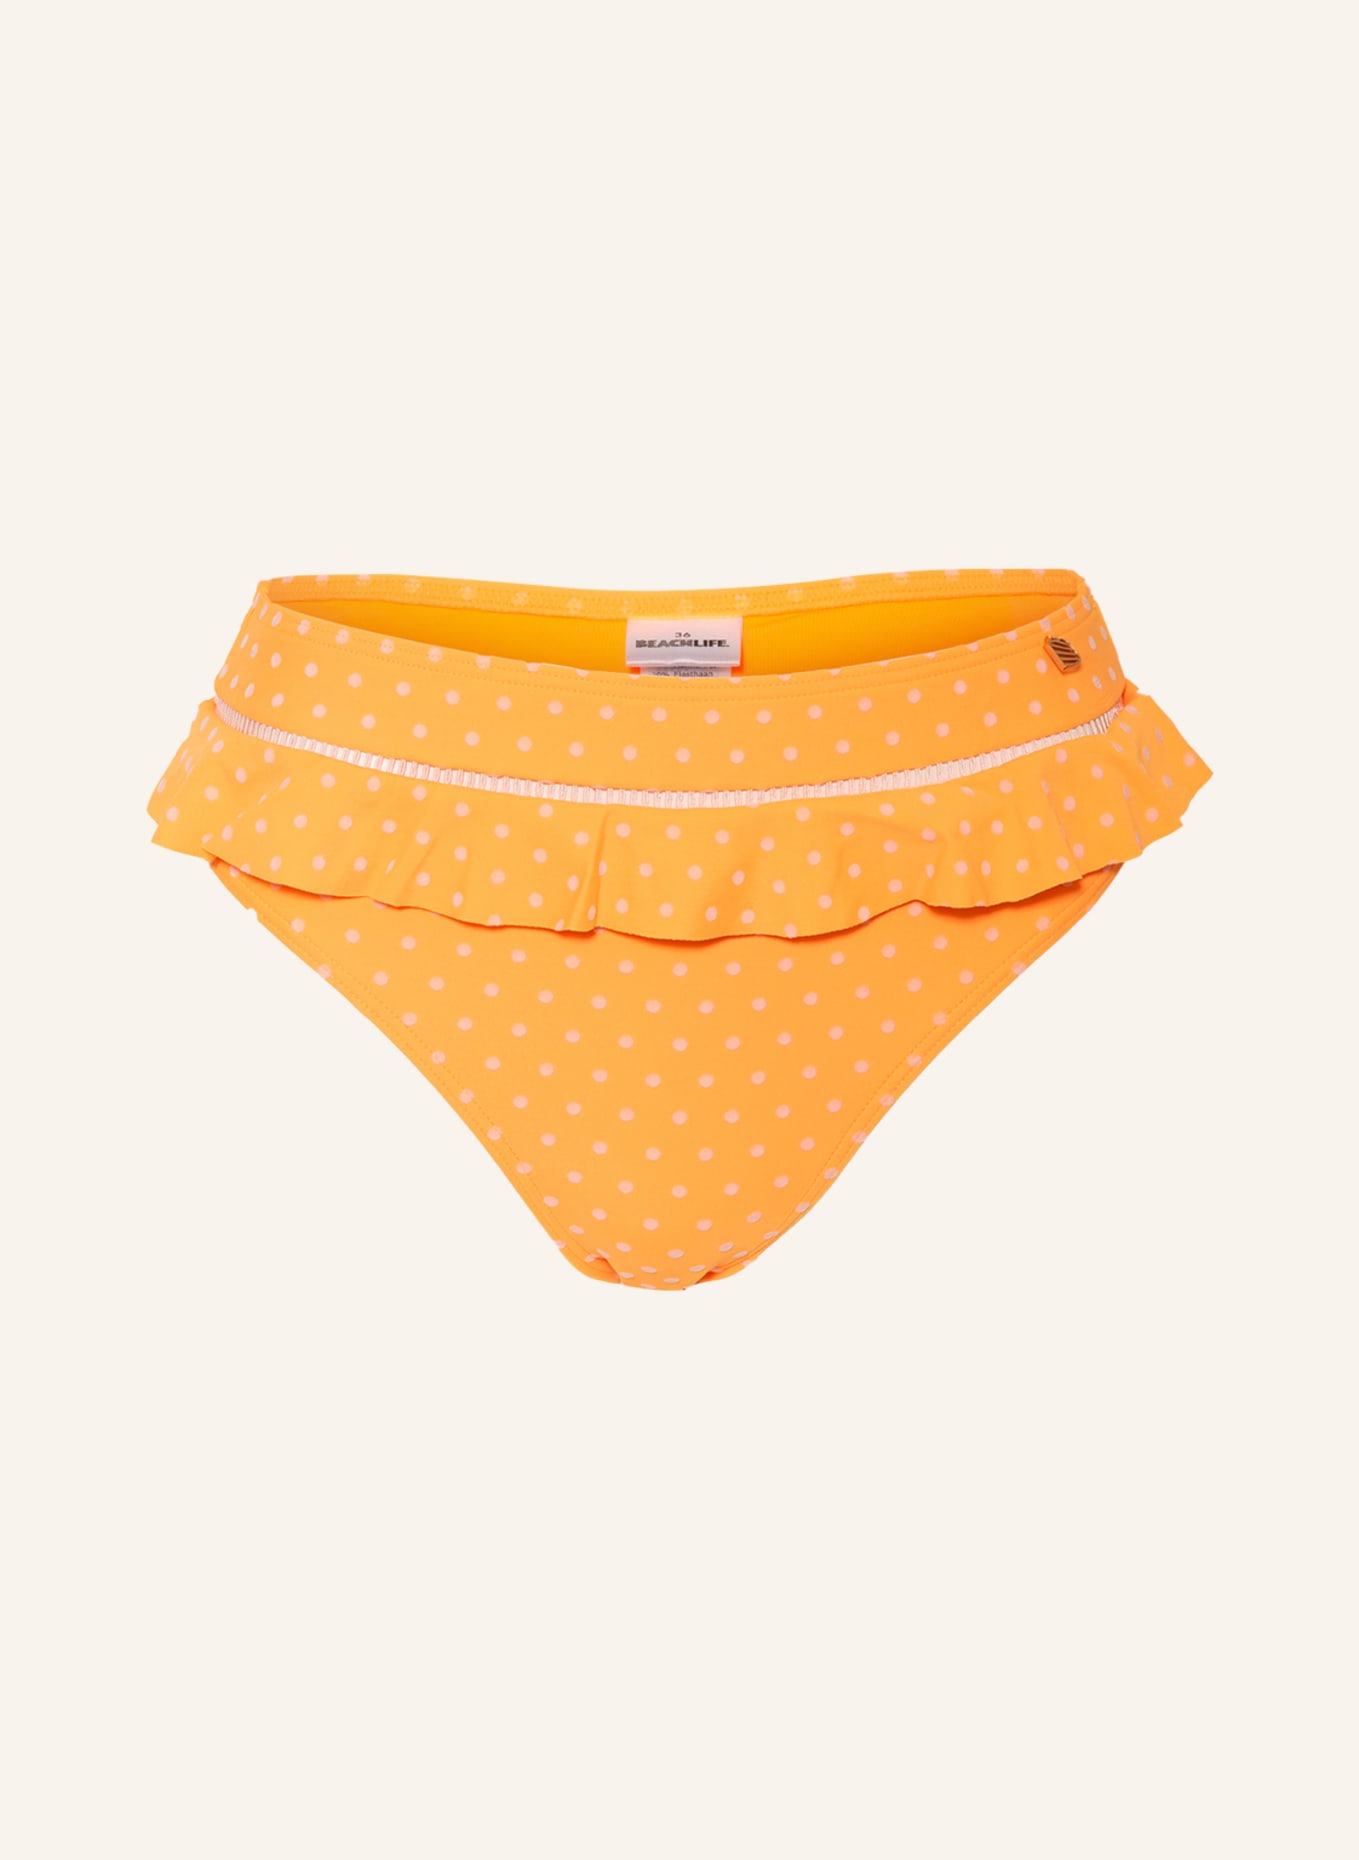 BEACHLIFE High-waist bikini bottoms VELVET DOT, Color: NEON ORANGE (Image 1)